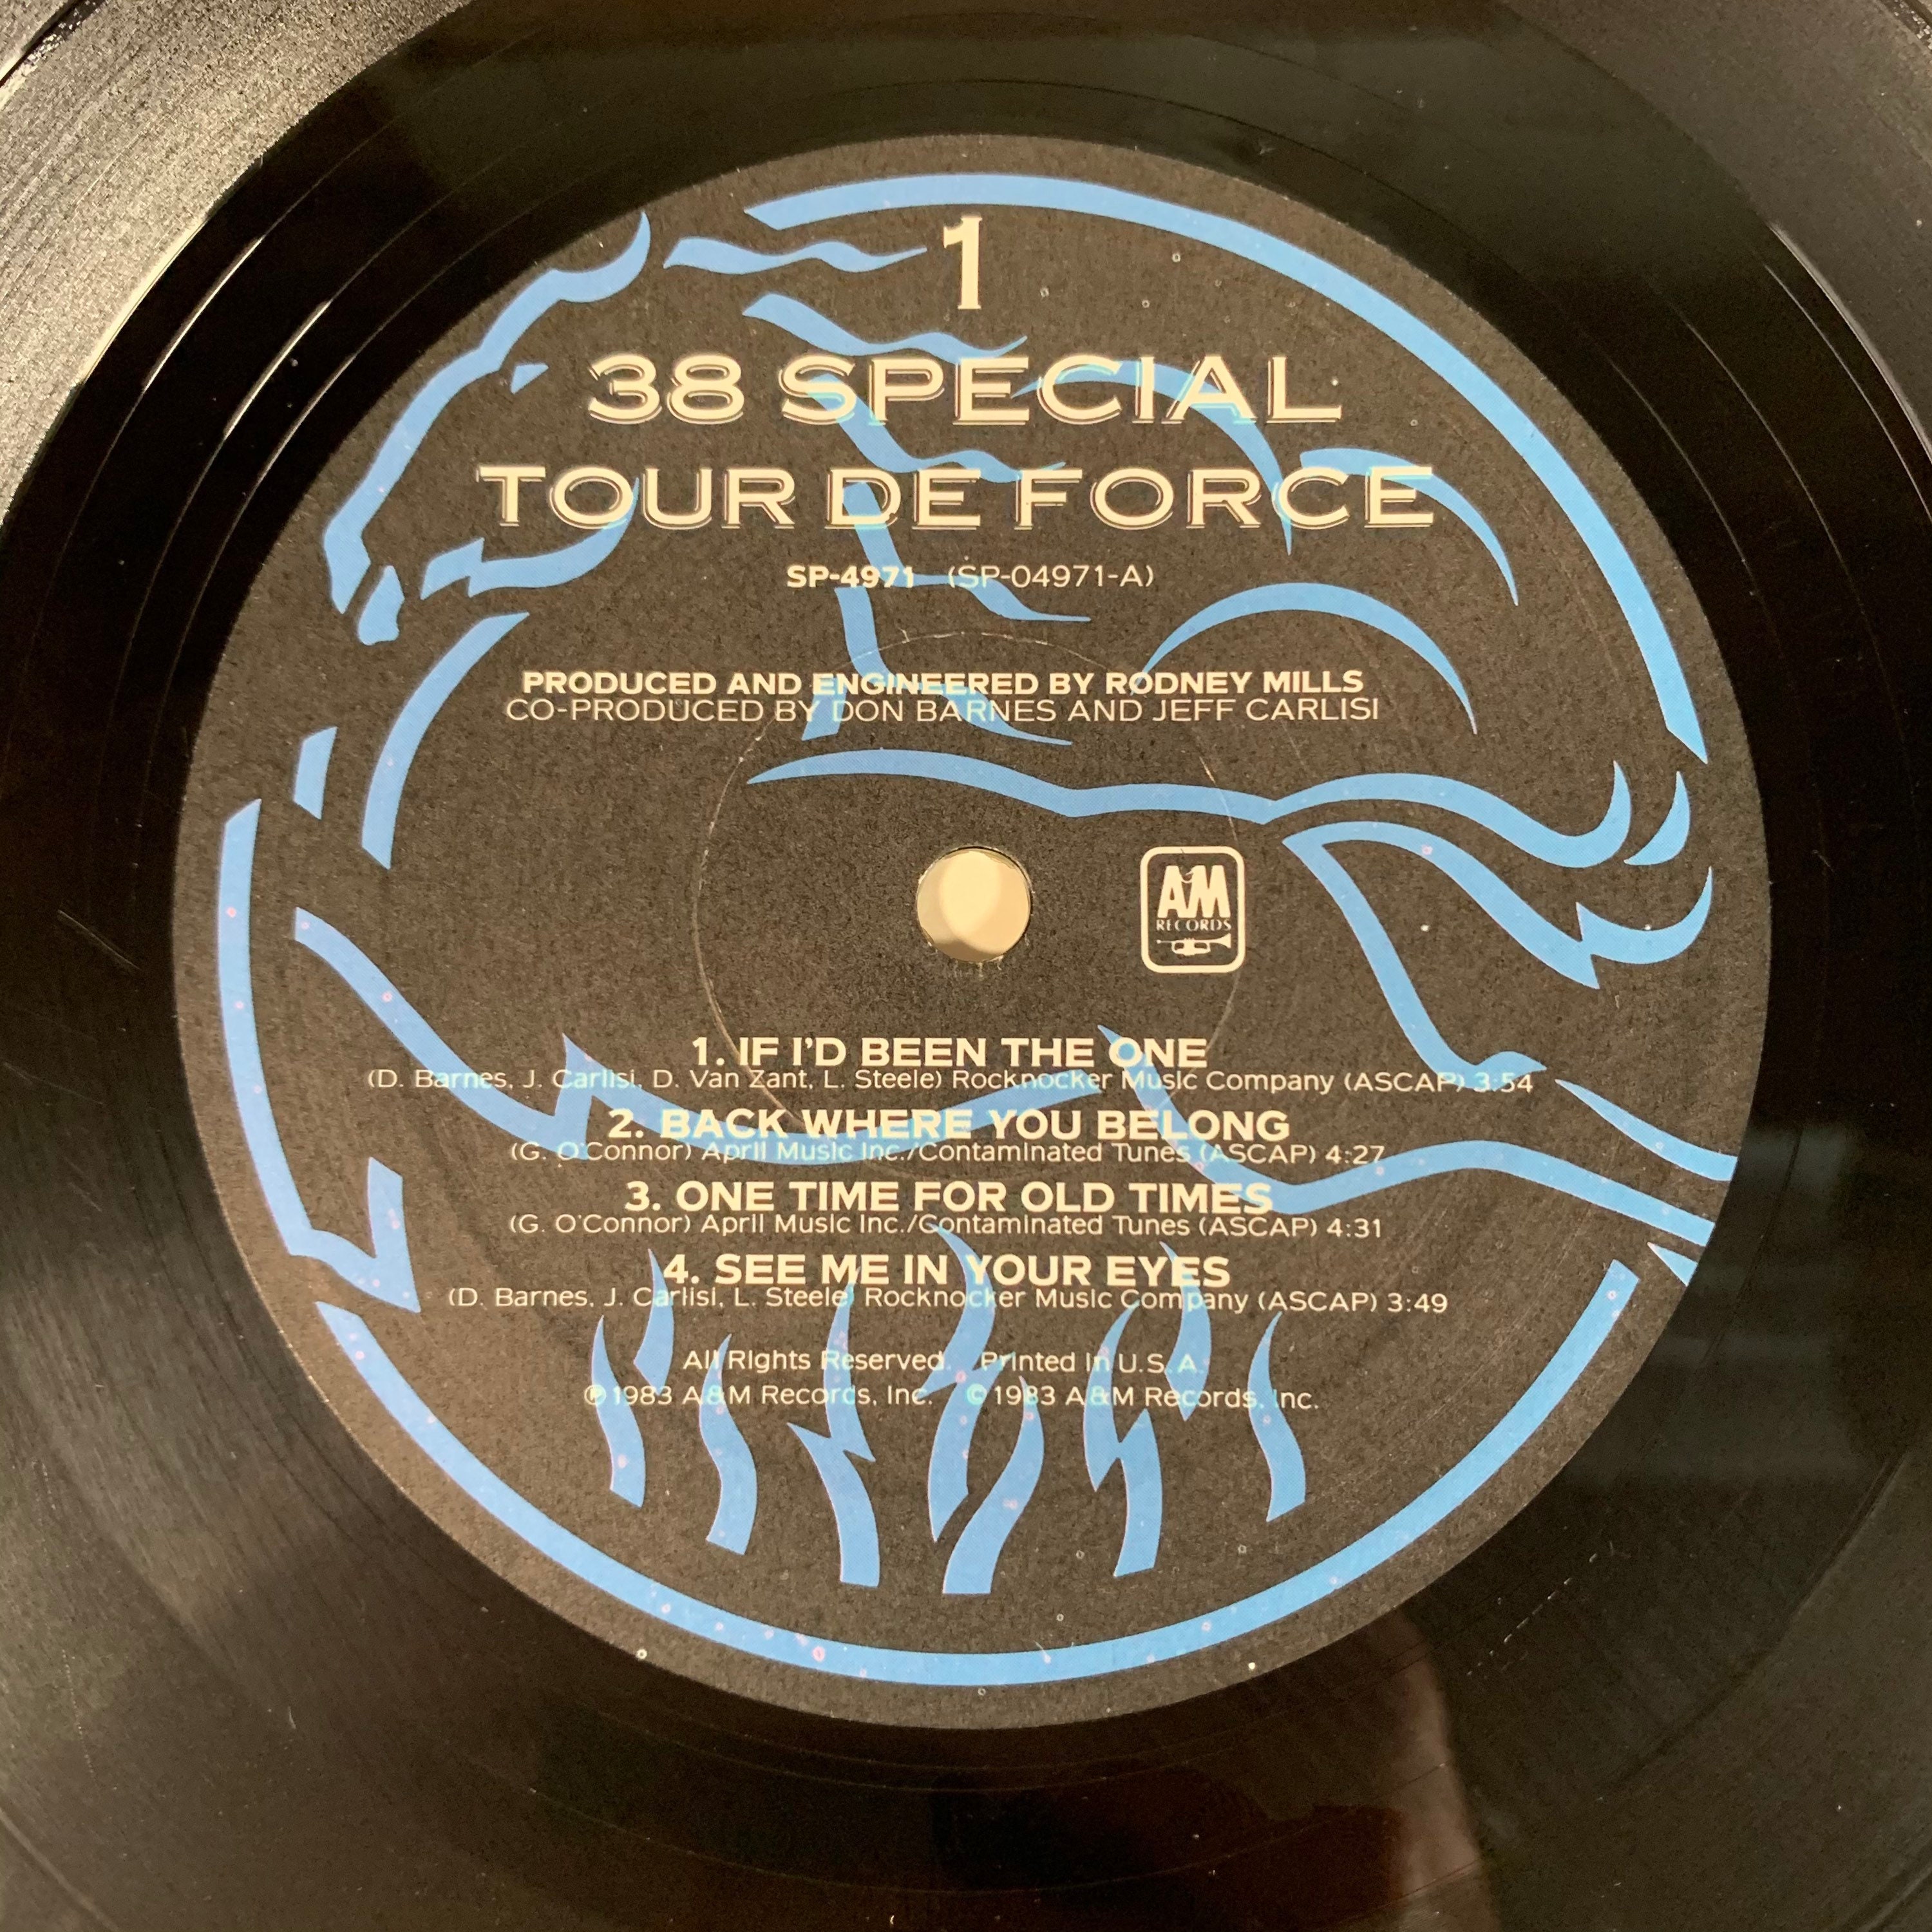 38 special tour de force vinyl